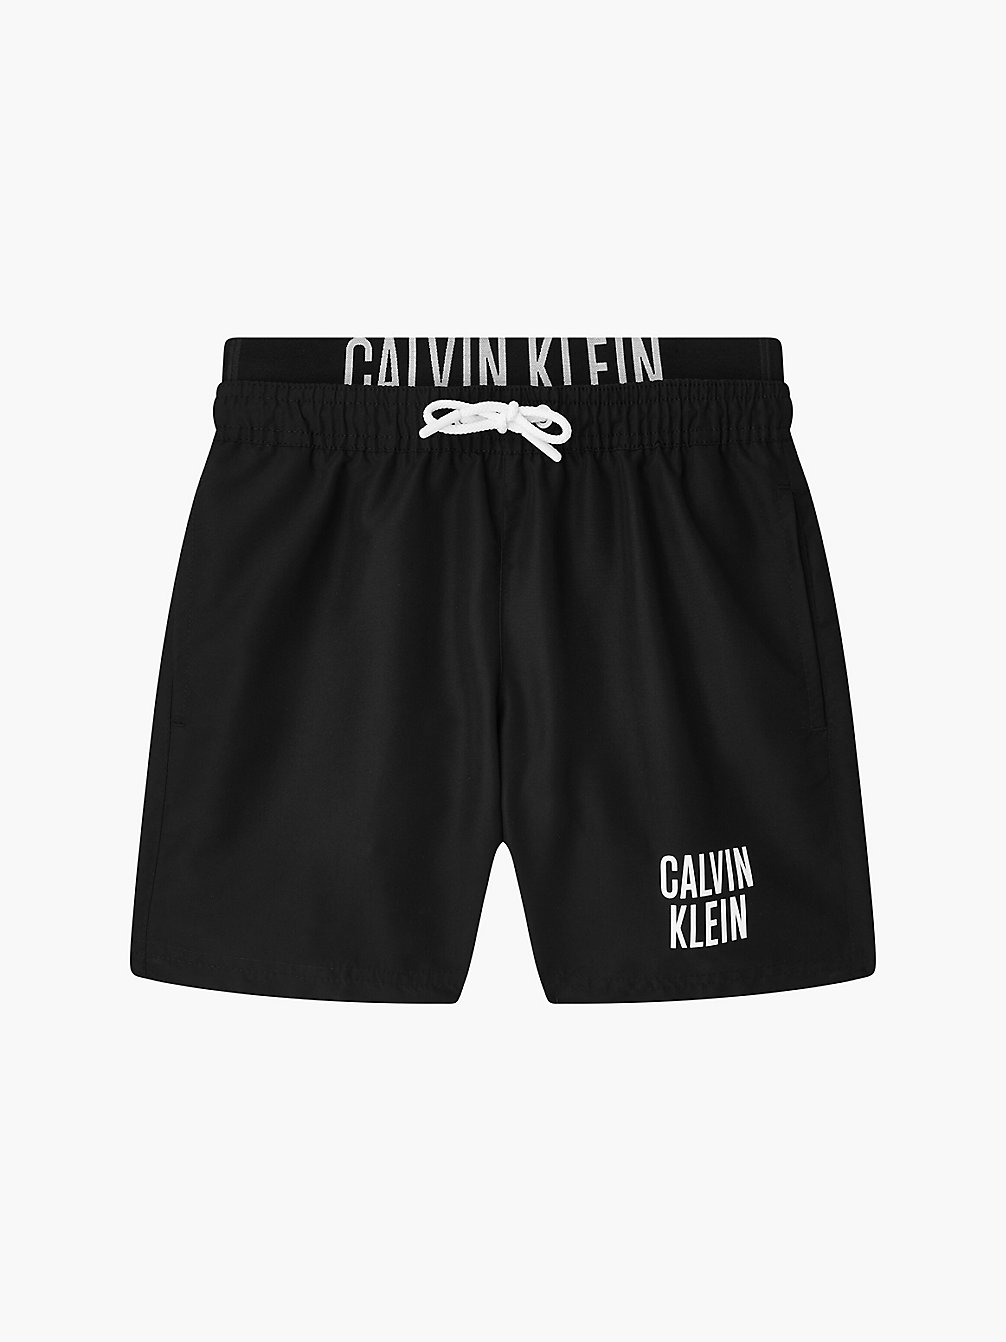 PVH BLACK > Jongenszwemshorts - Intense Power > undefined jongens - Calvin Klein